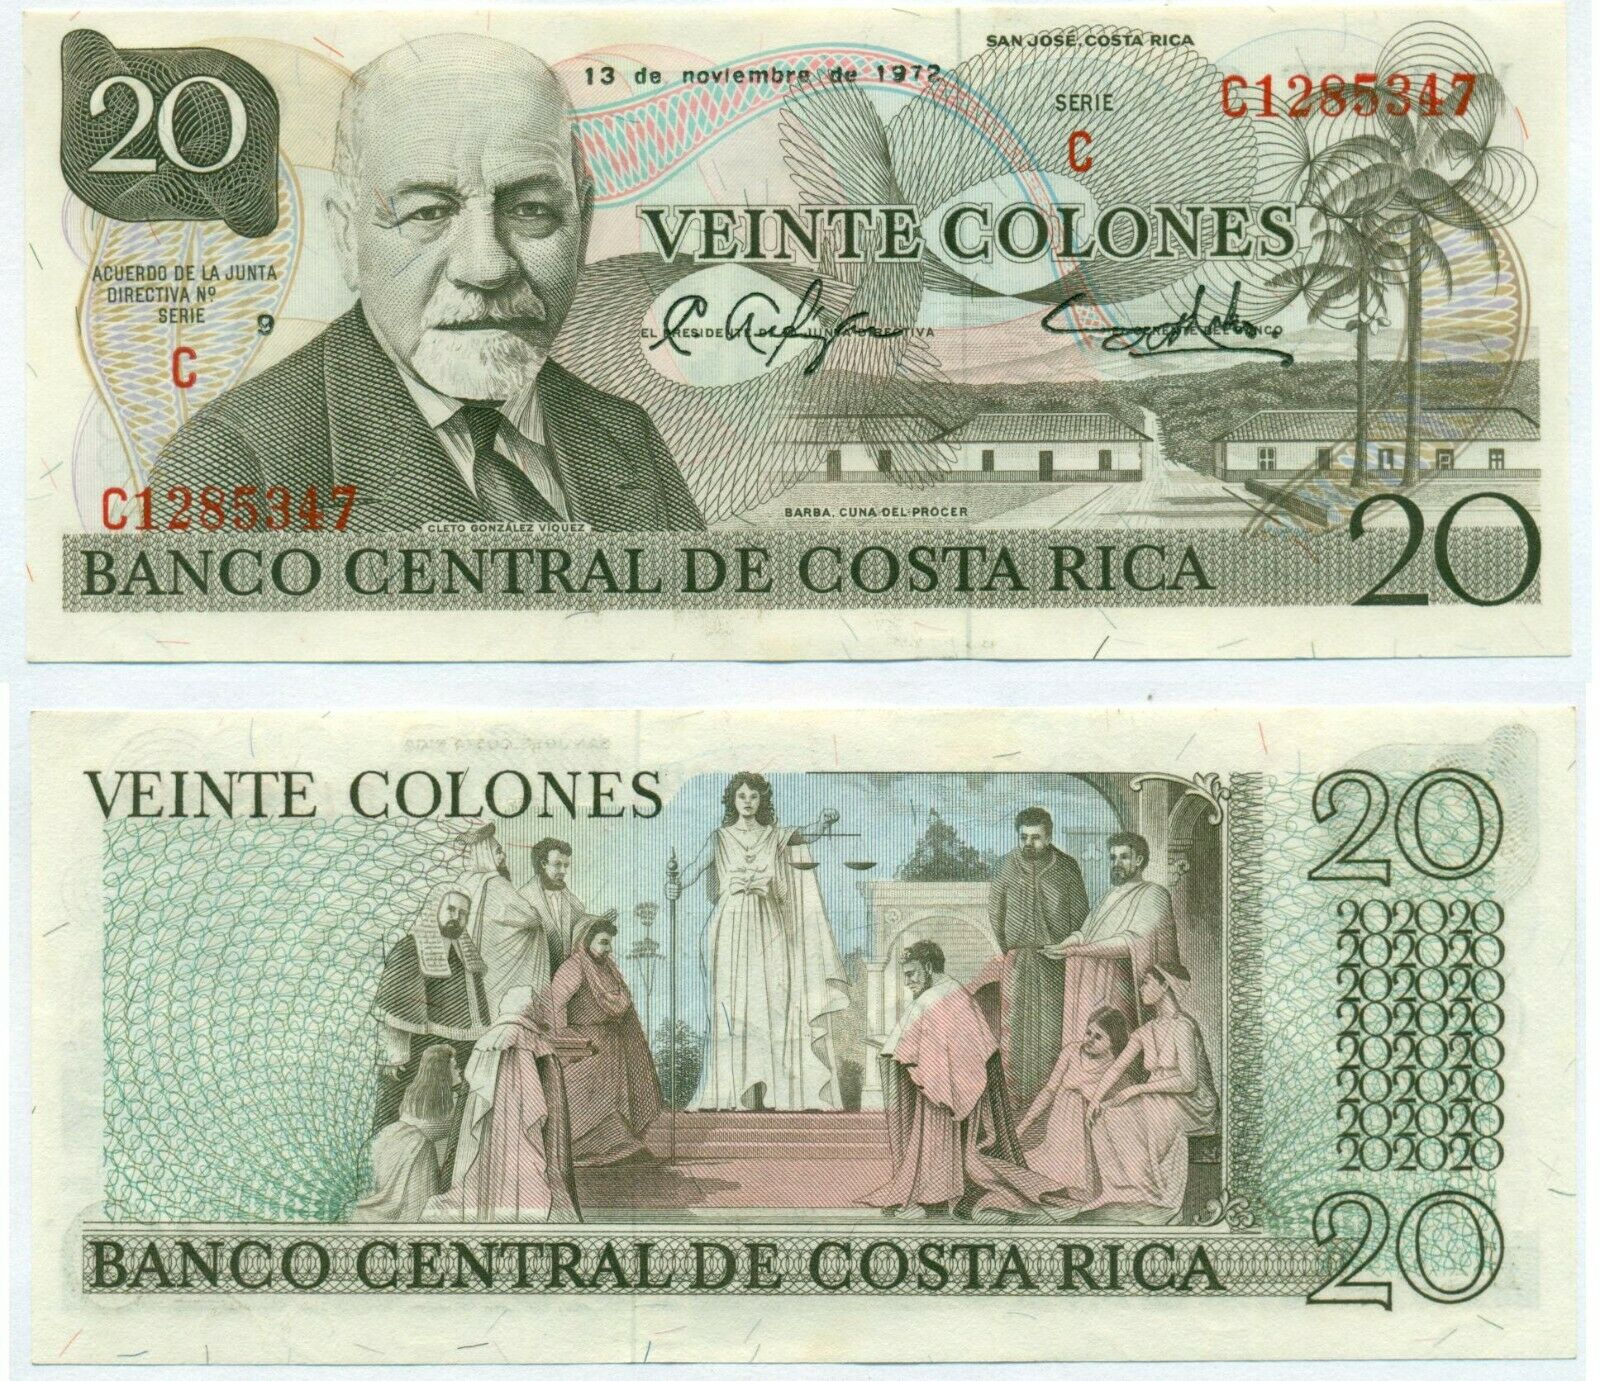 Costa Rica Note 20 Colones 13.11.1972 P 238b Unc